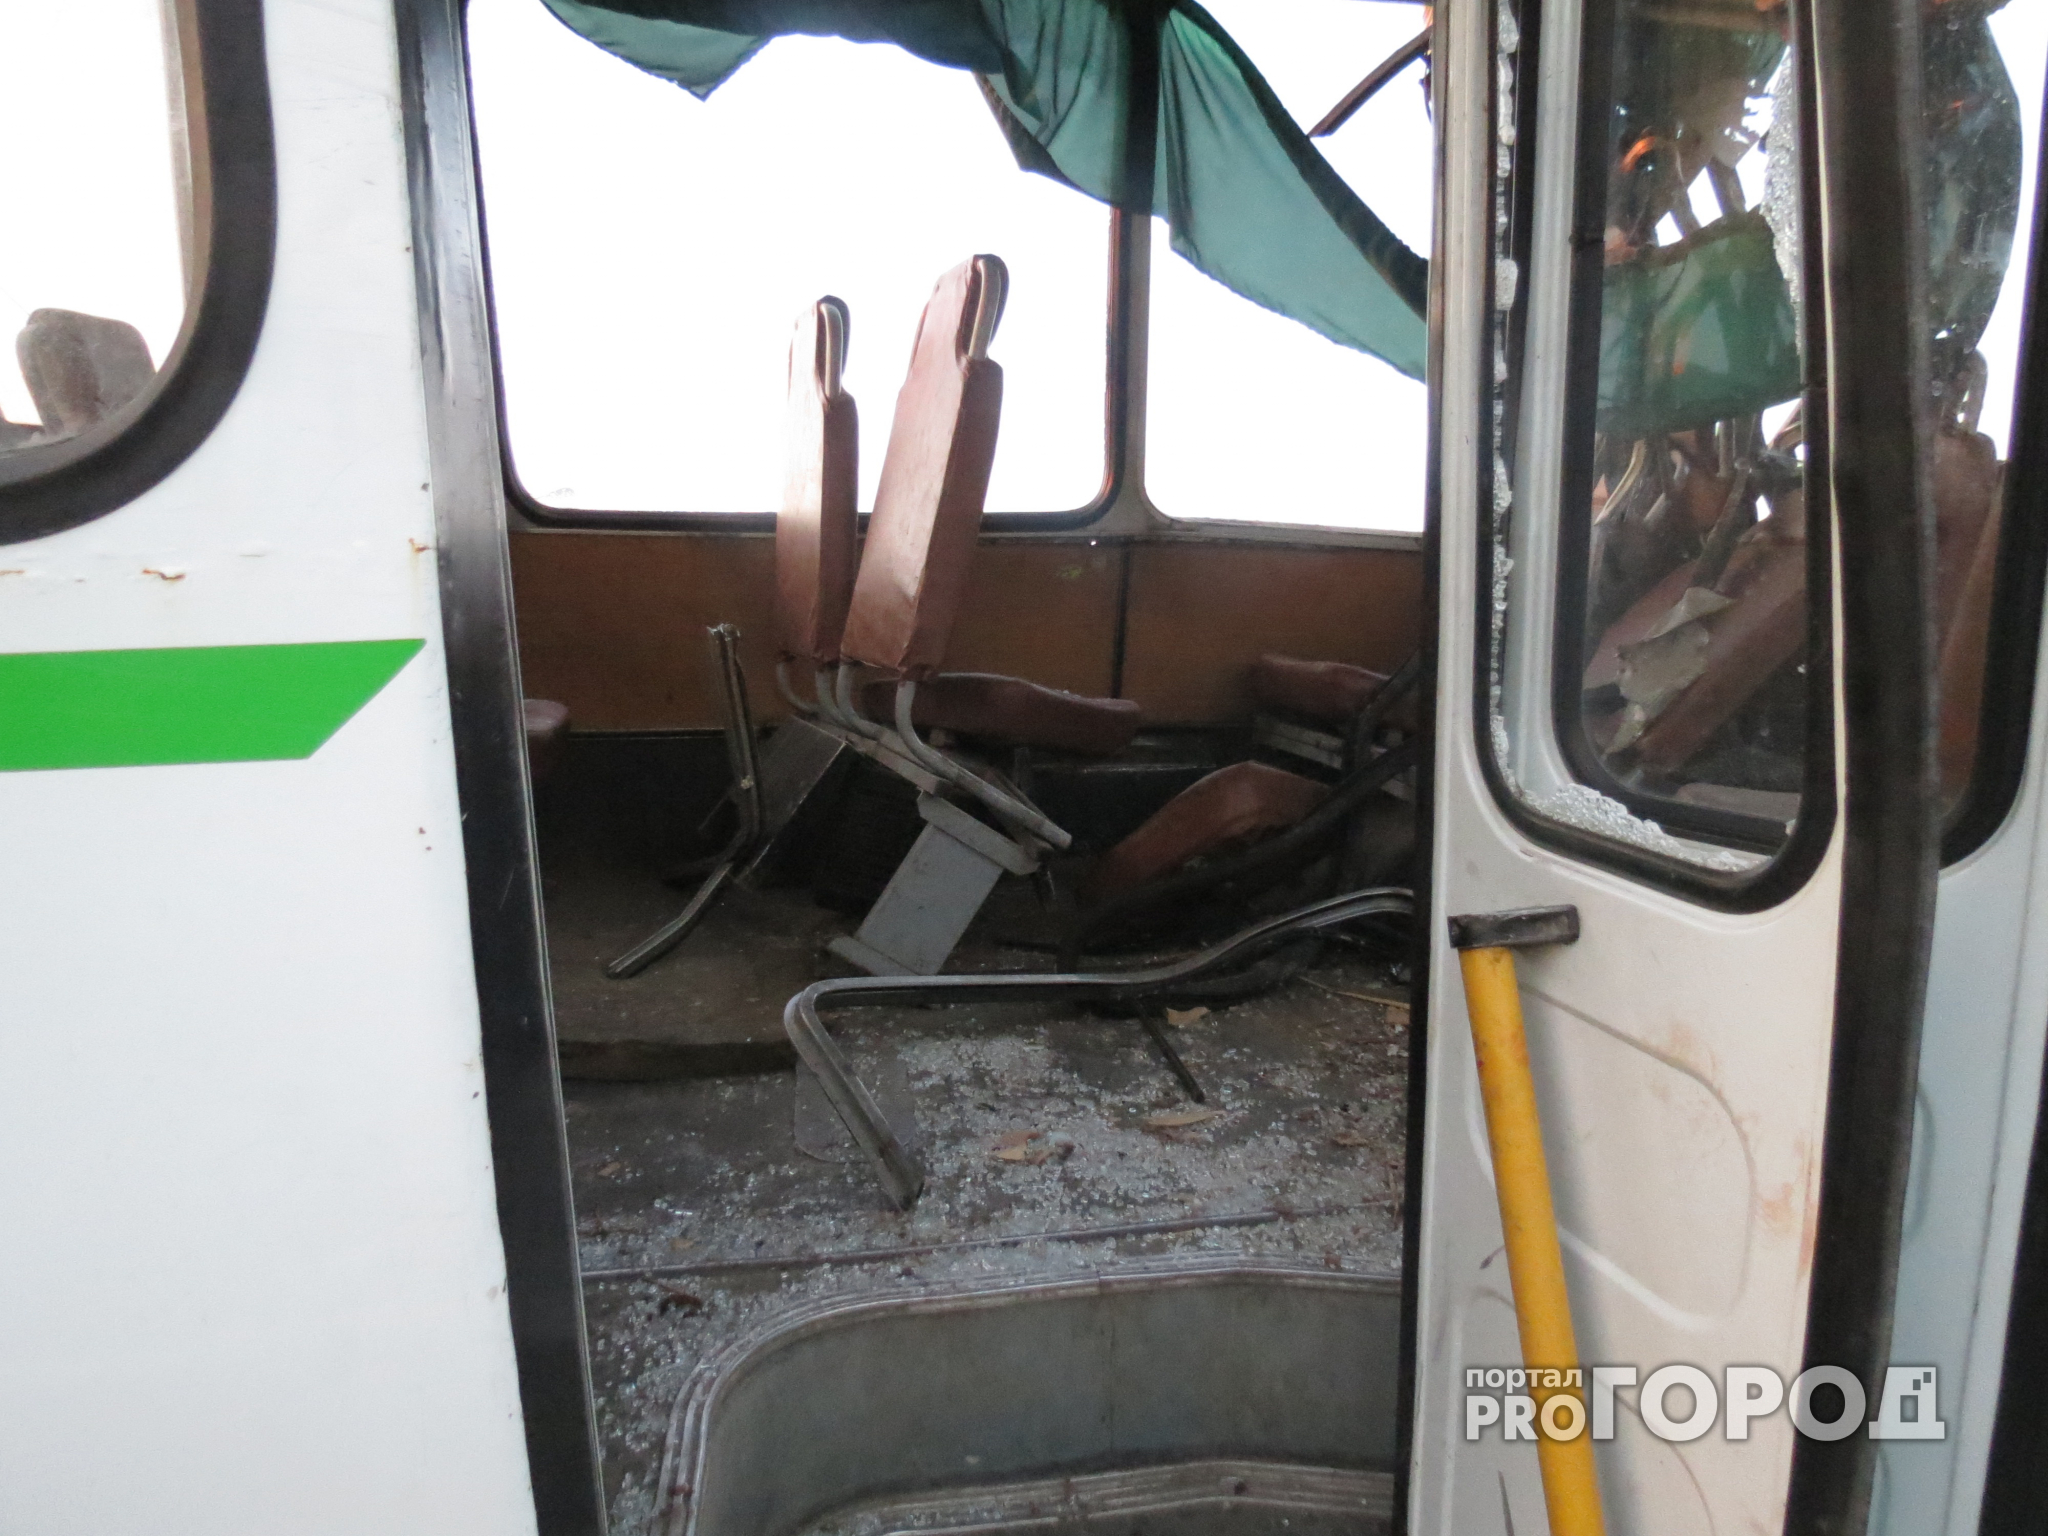 В Ярославле при столкновении автобуса и легковушки пострадали люди